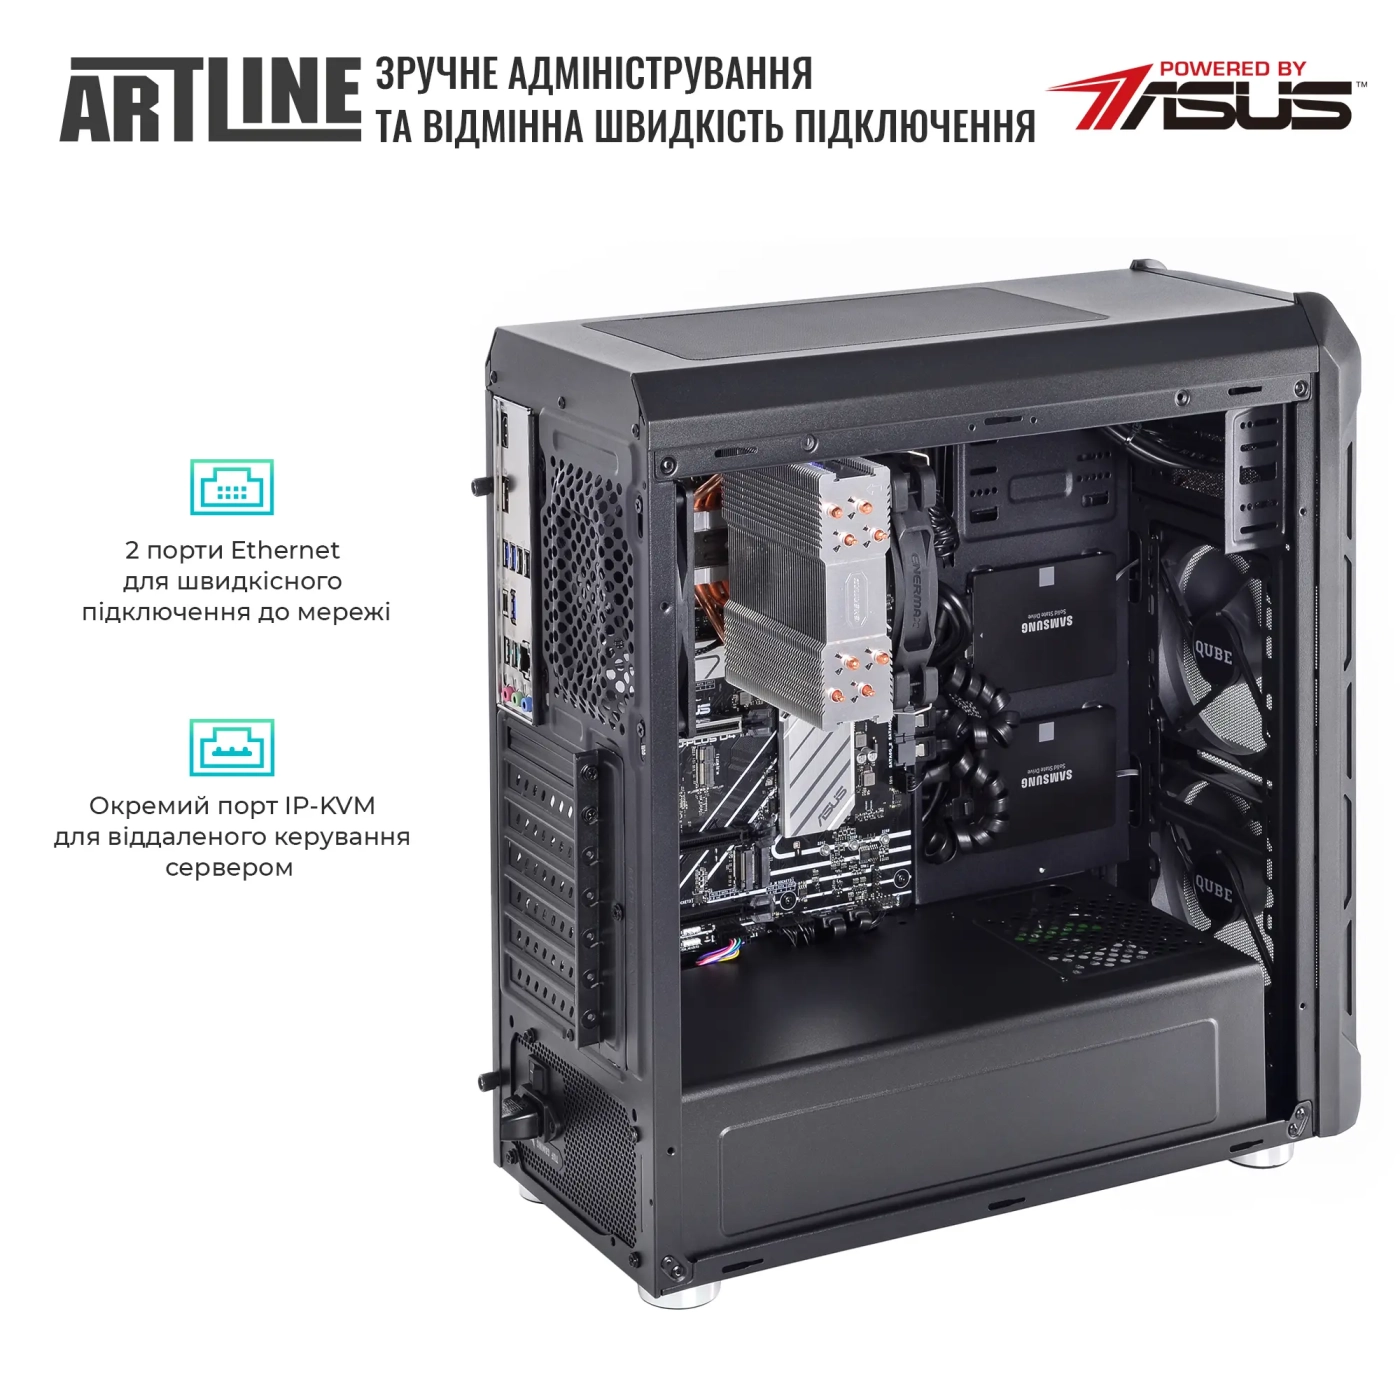 Купить Сервер ARTLINE Business T27 (T27v35) - фото 6